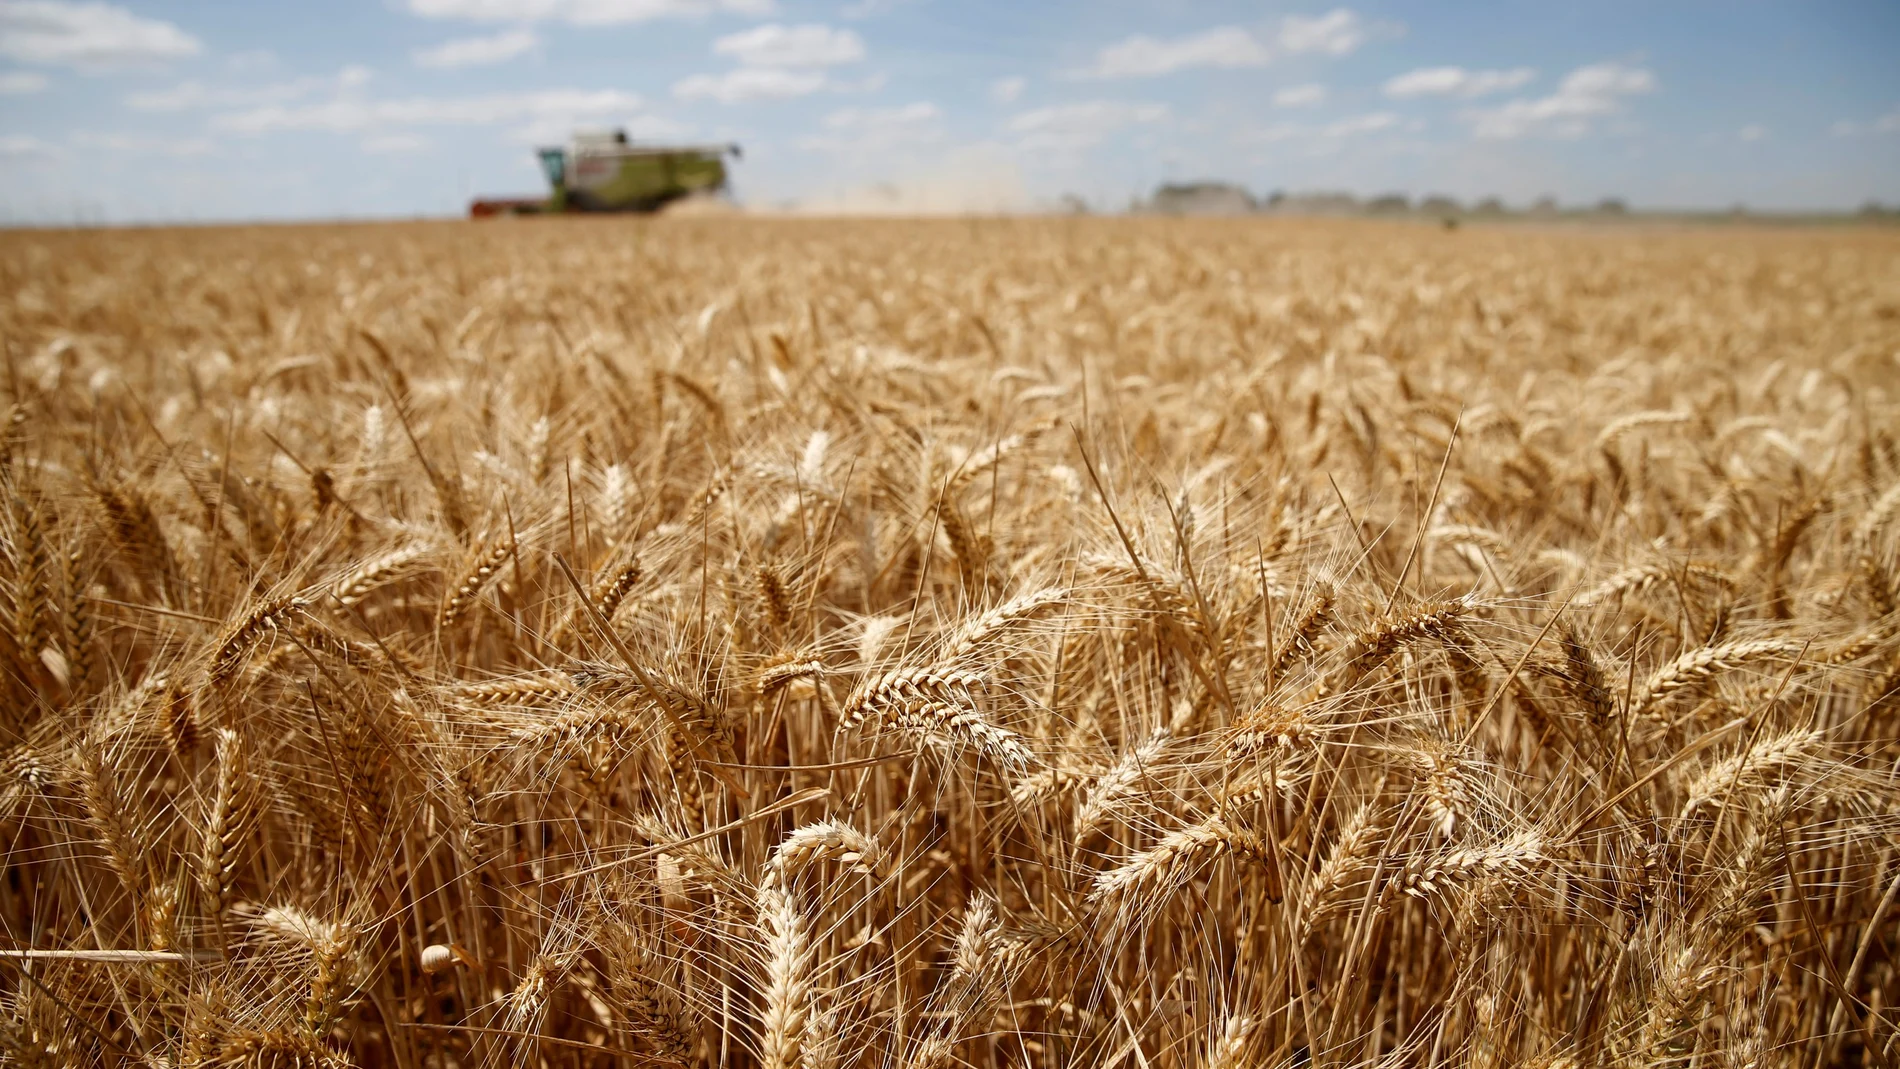 La semana se cerró en Chicago con un recorte del 7% en el precio del trigo